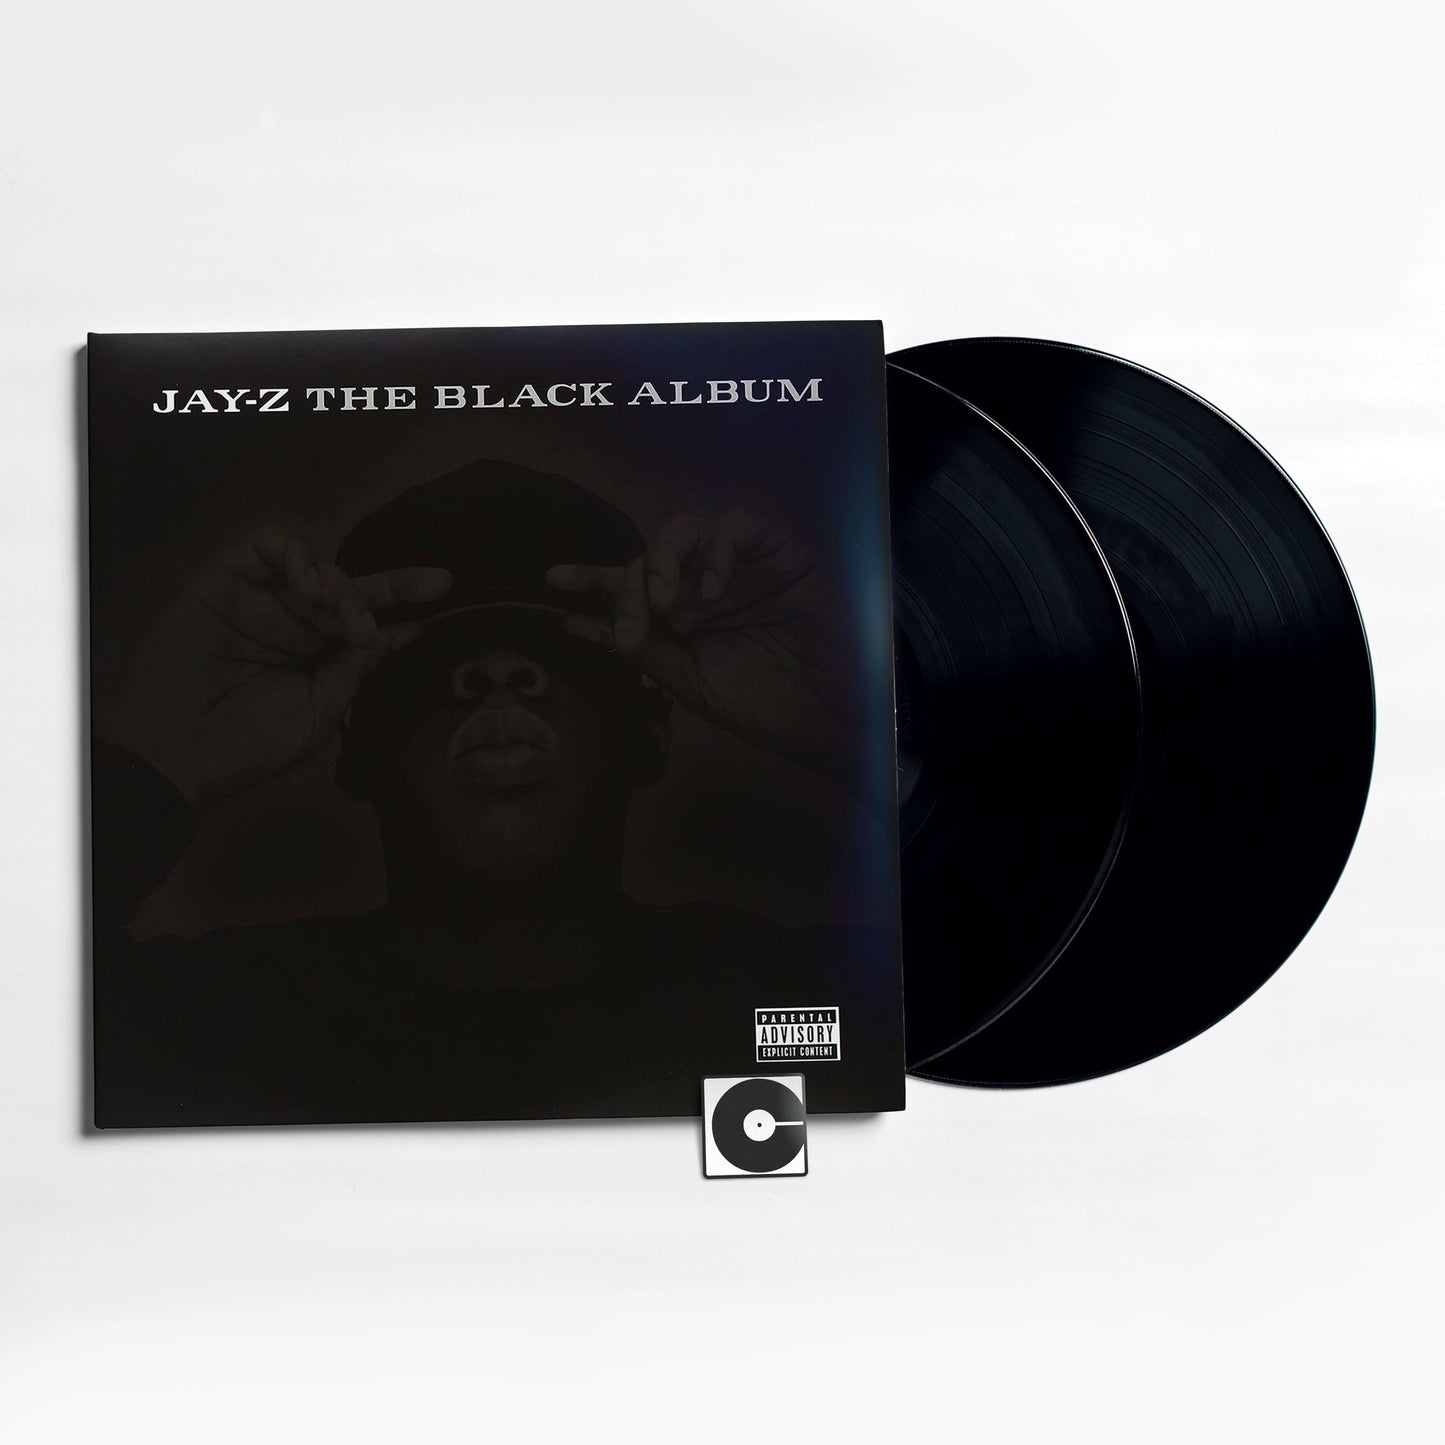 Jay-Z - "The Black Album"